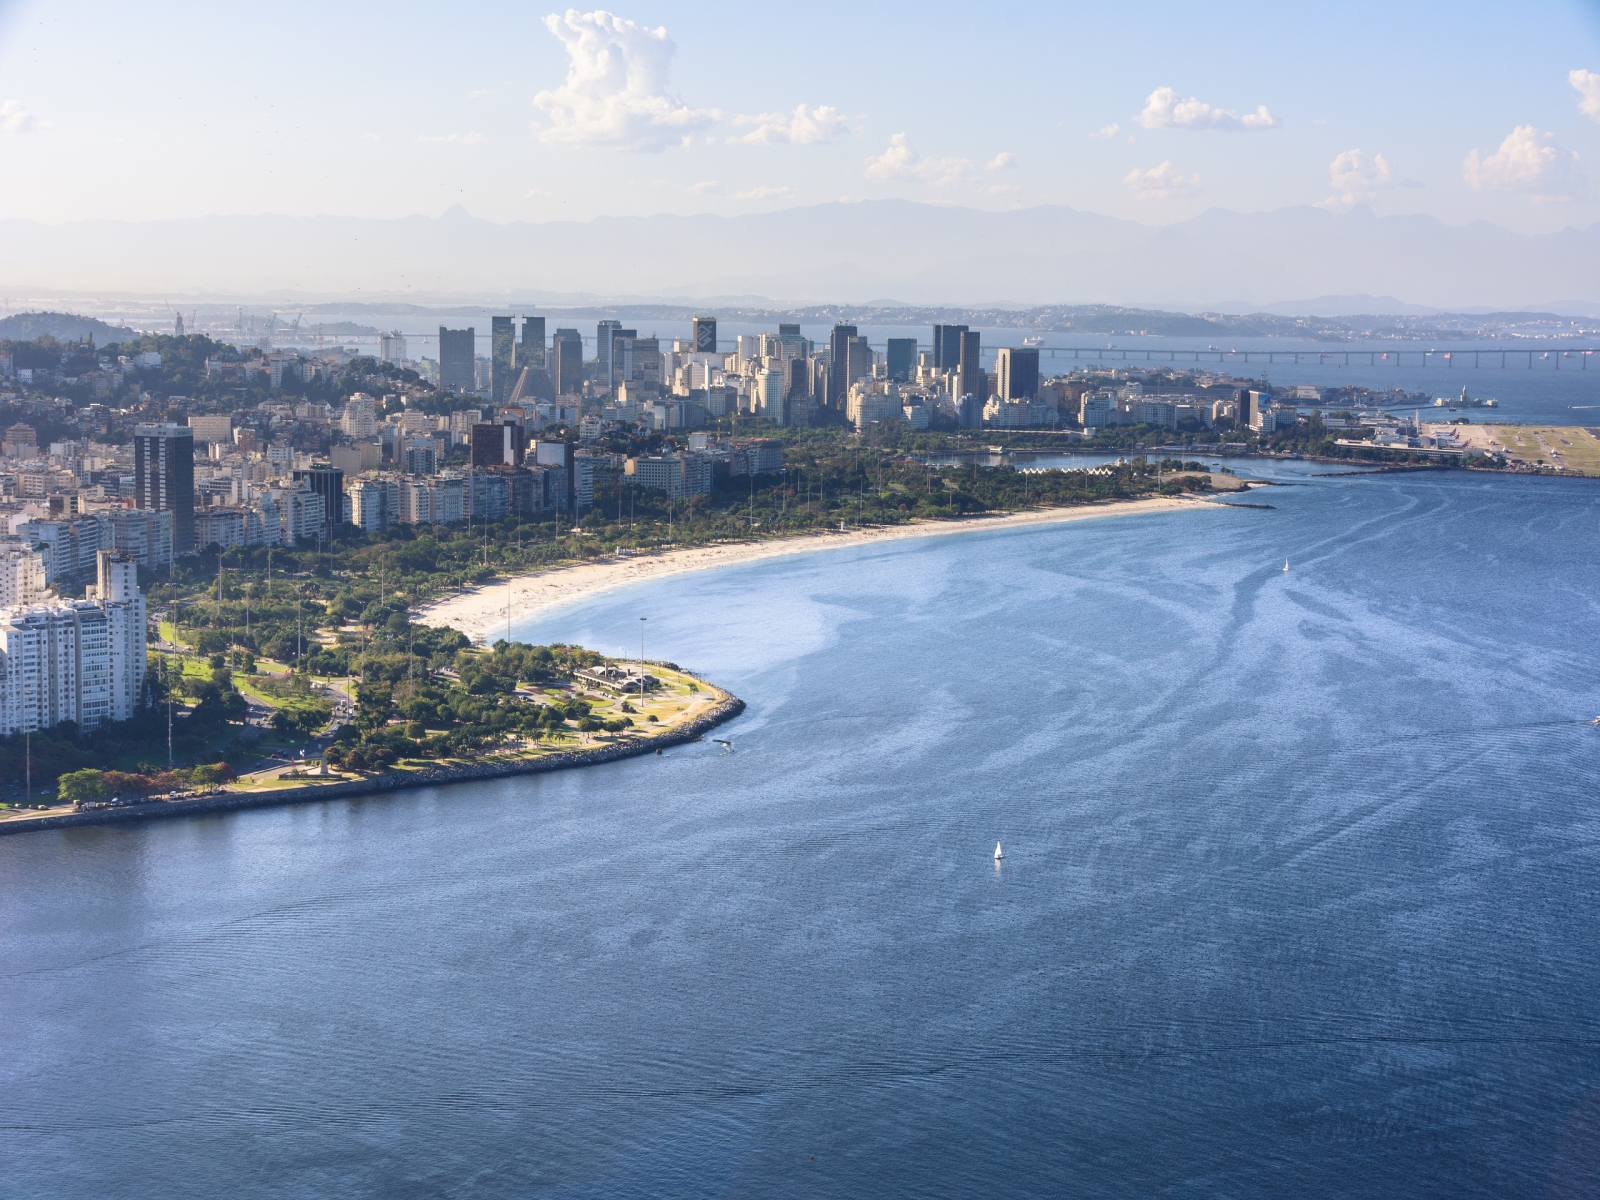 Rio de Janeiro Brazil for 1600 x 1200 resolution